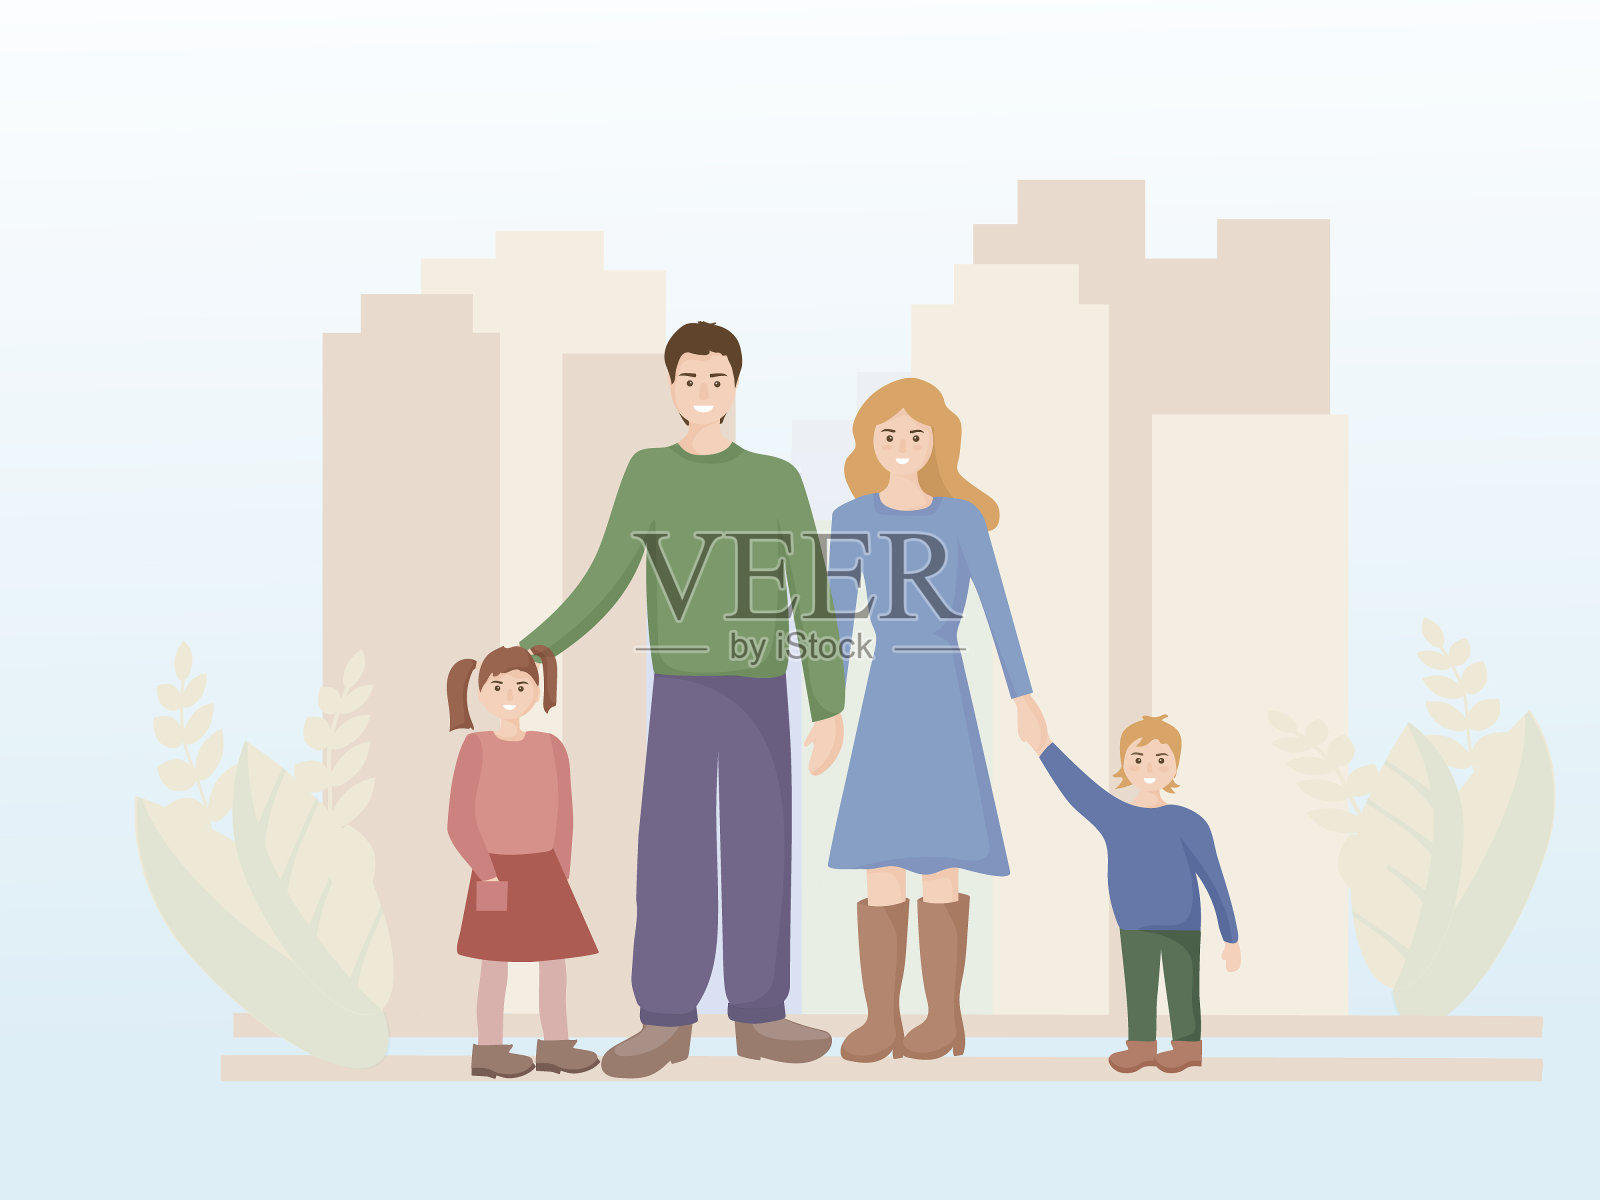 一个幸福家庭的肖像，背景是一个有着高楼大厦的大城市。爸爸，妈妈和两个孩子，儿子和女儿。人的微笑。爱的观念和家庭。向量插画图片素材